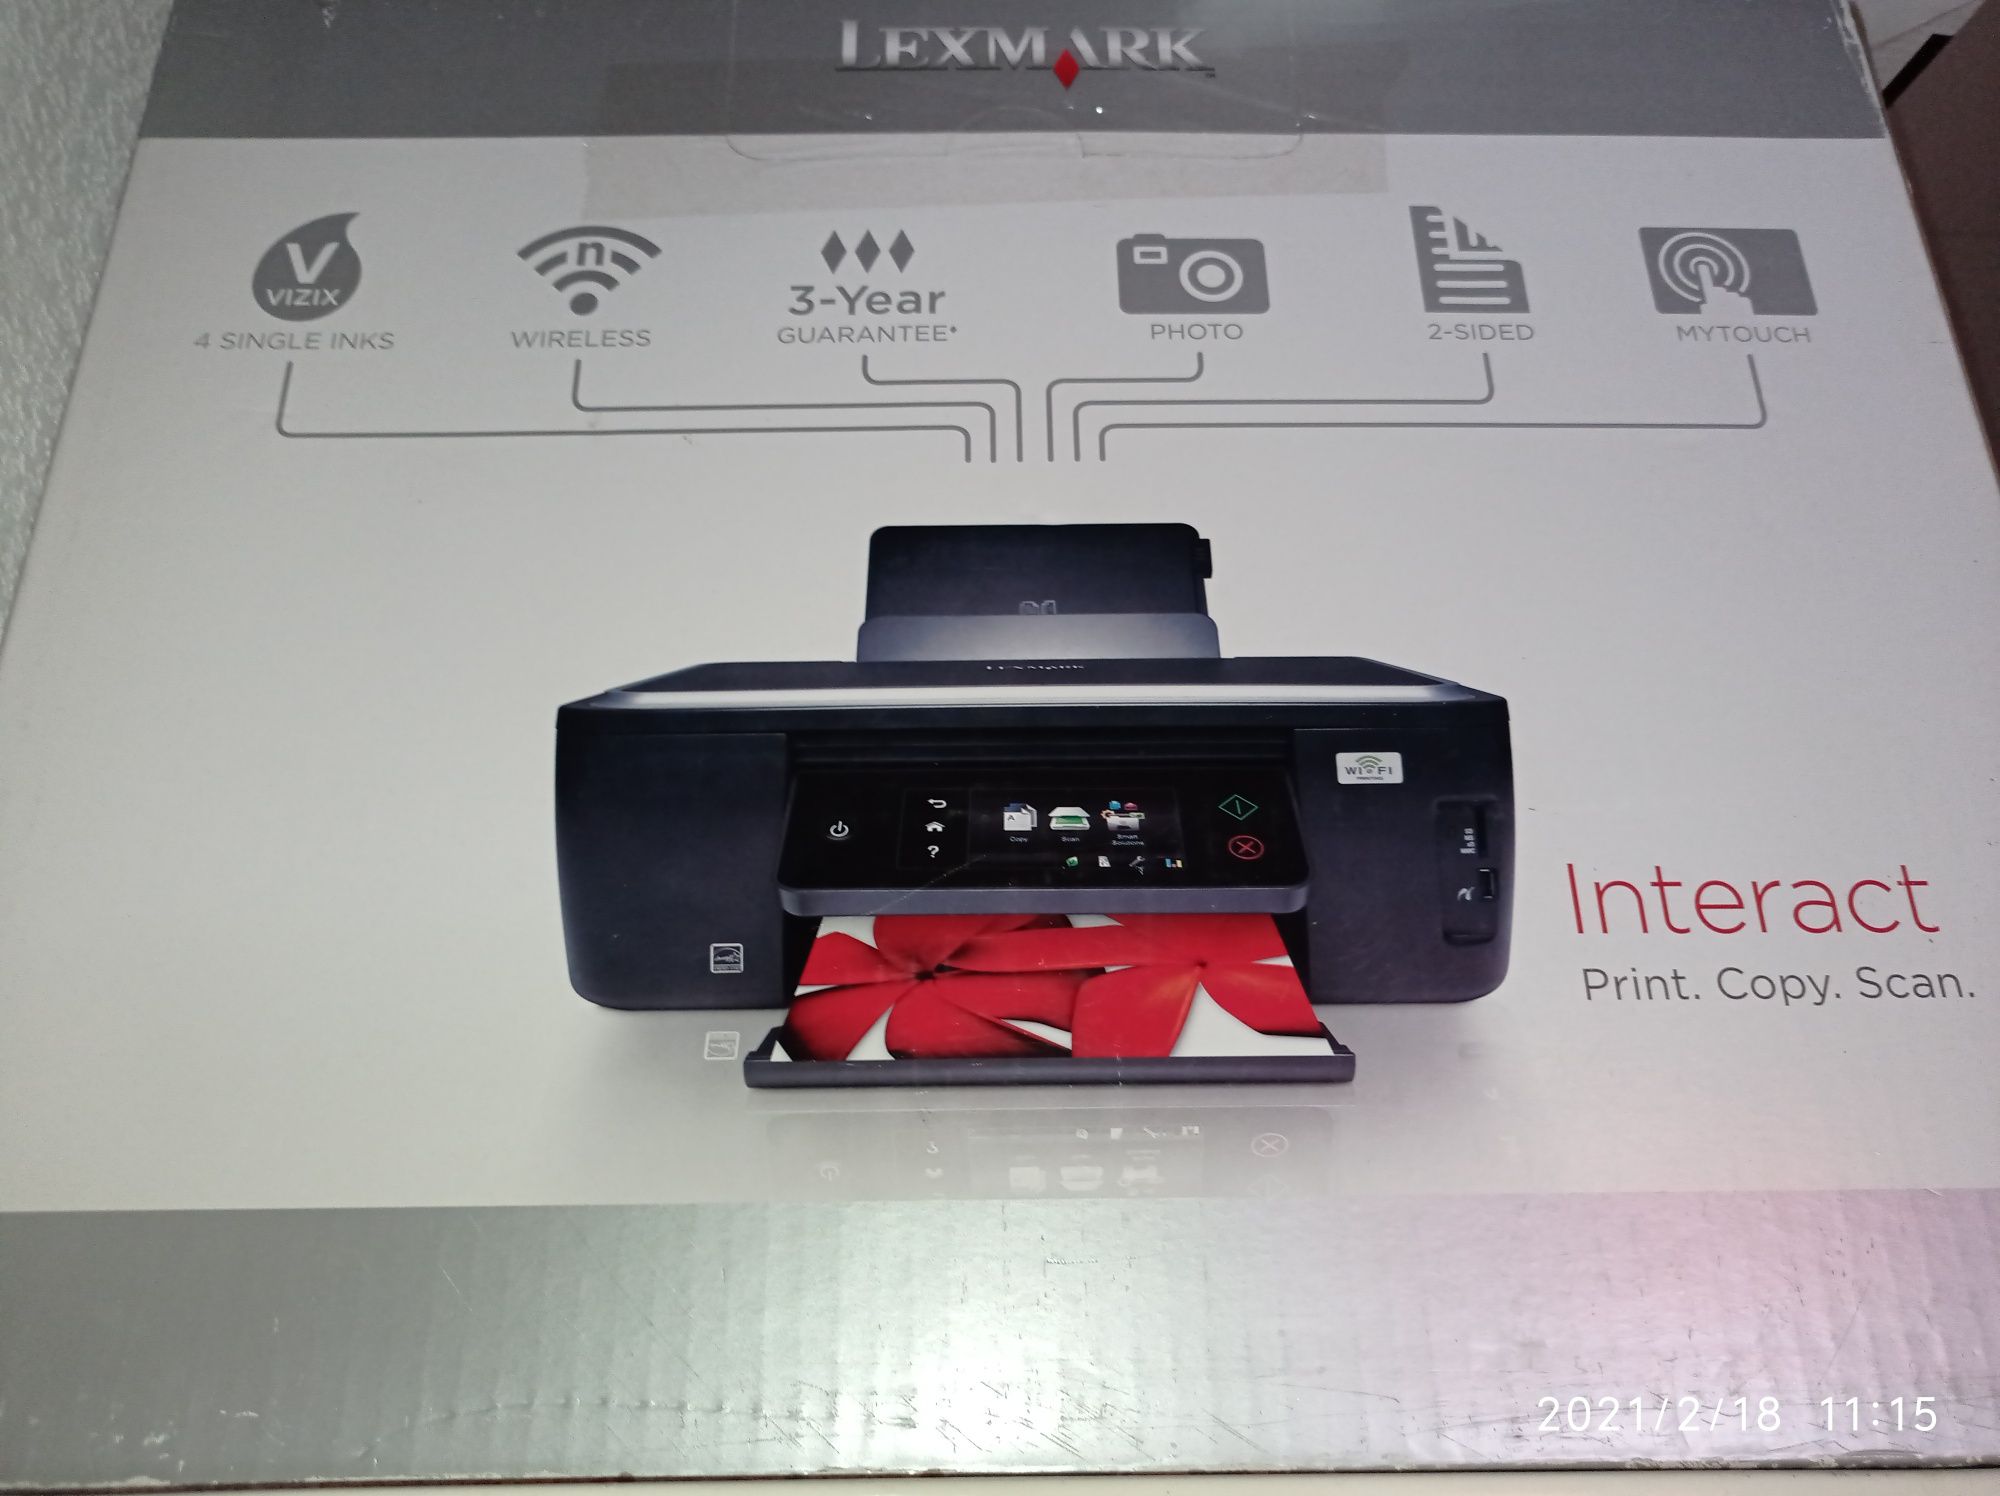 Wi-Fi МФУ Lexmark Interact s605